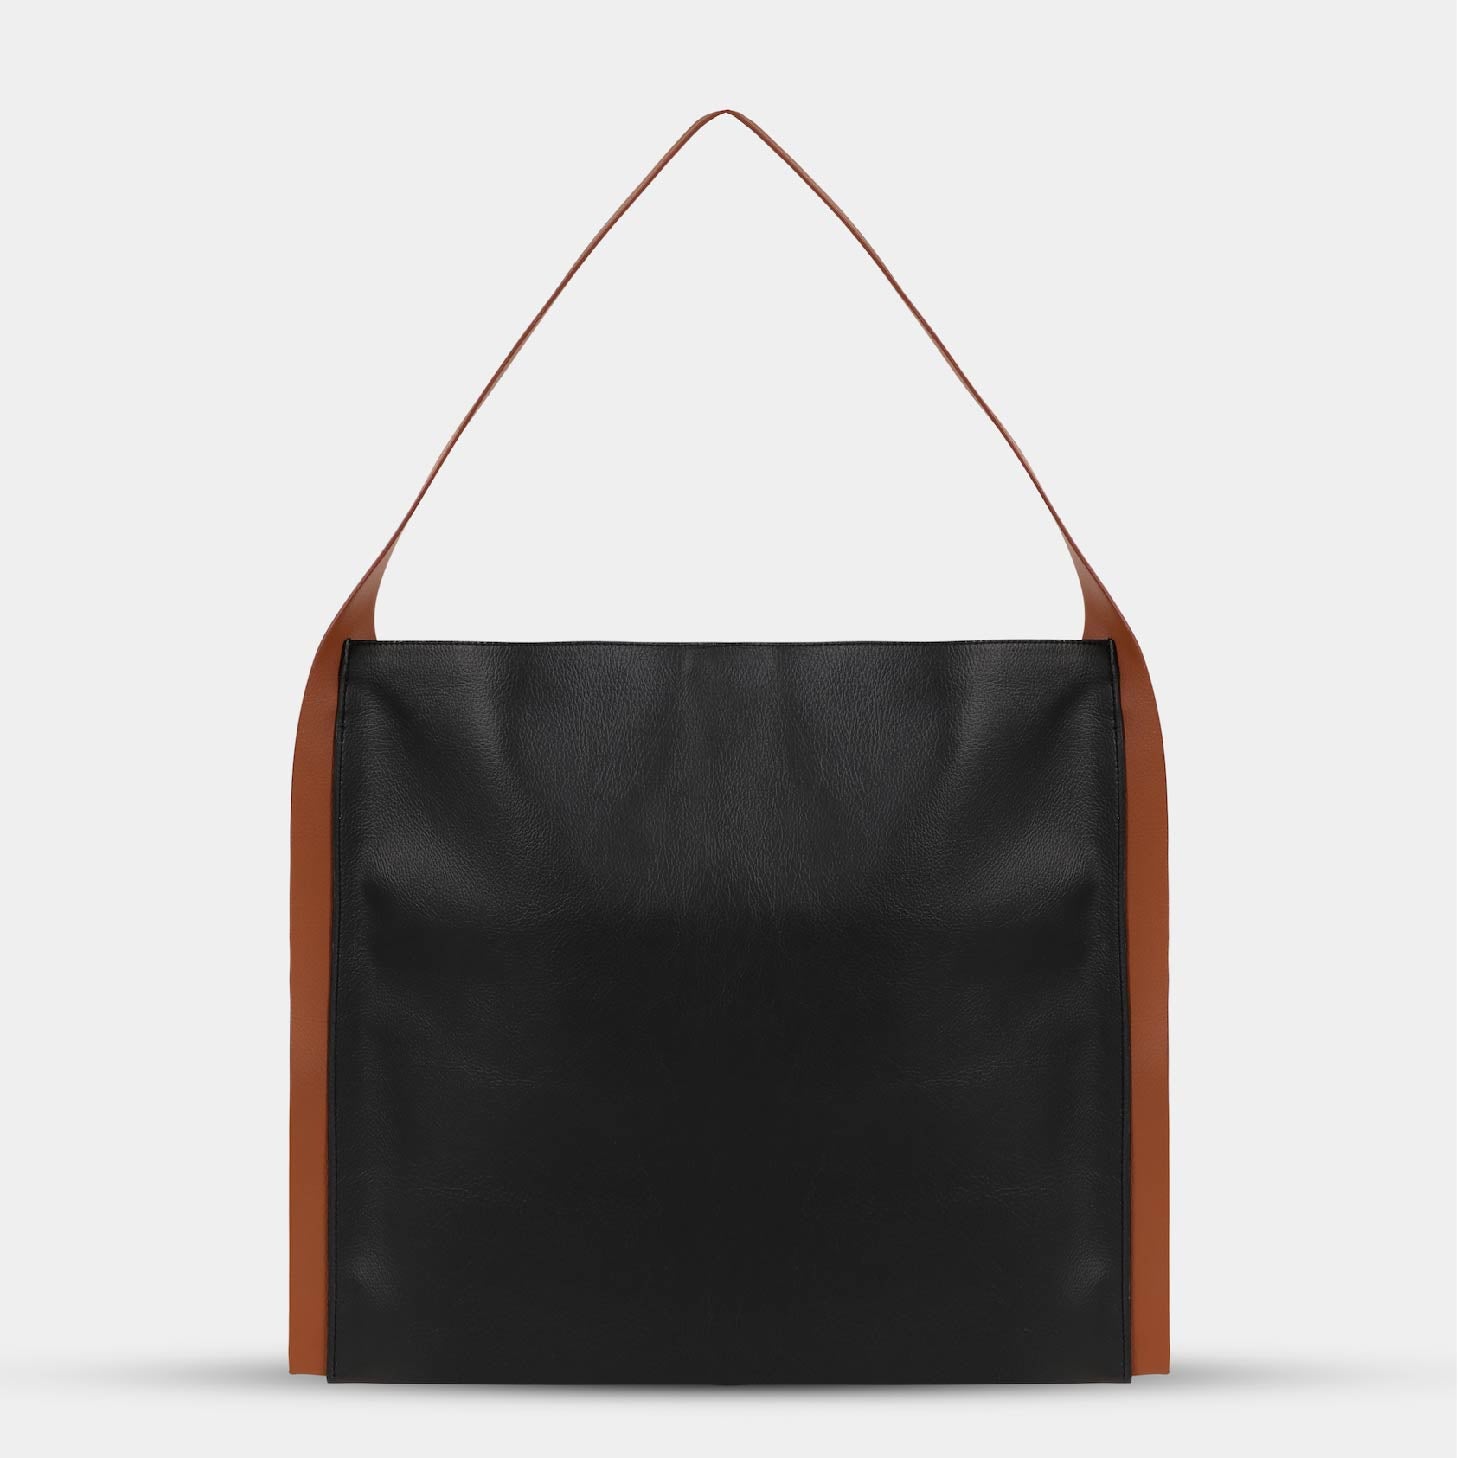 PAPER TOTE bag in black with orange strap